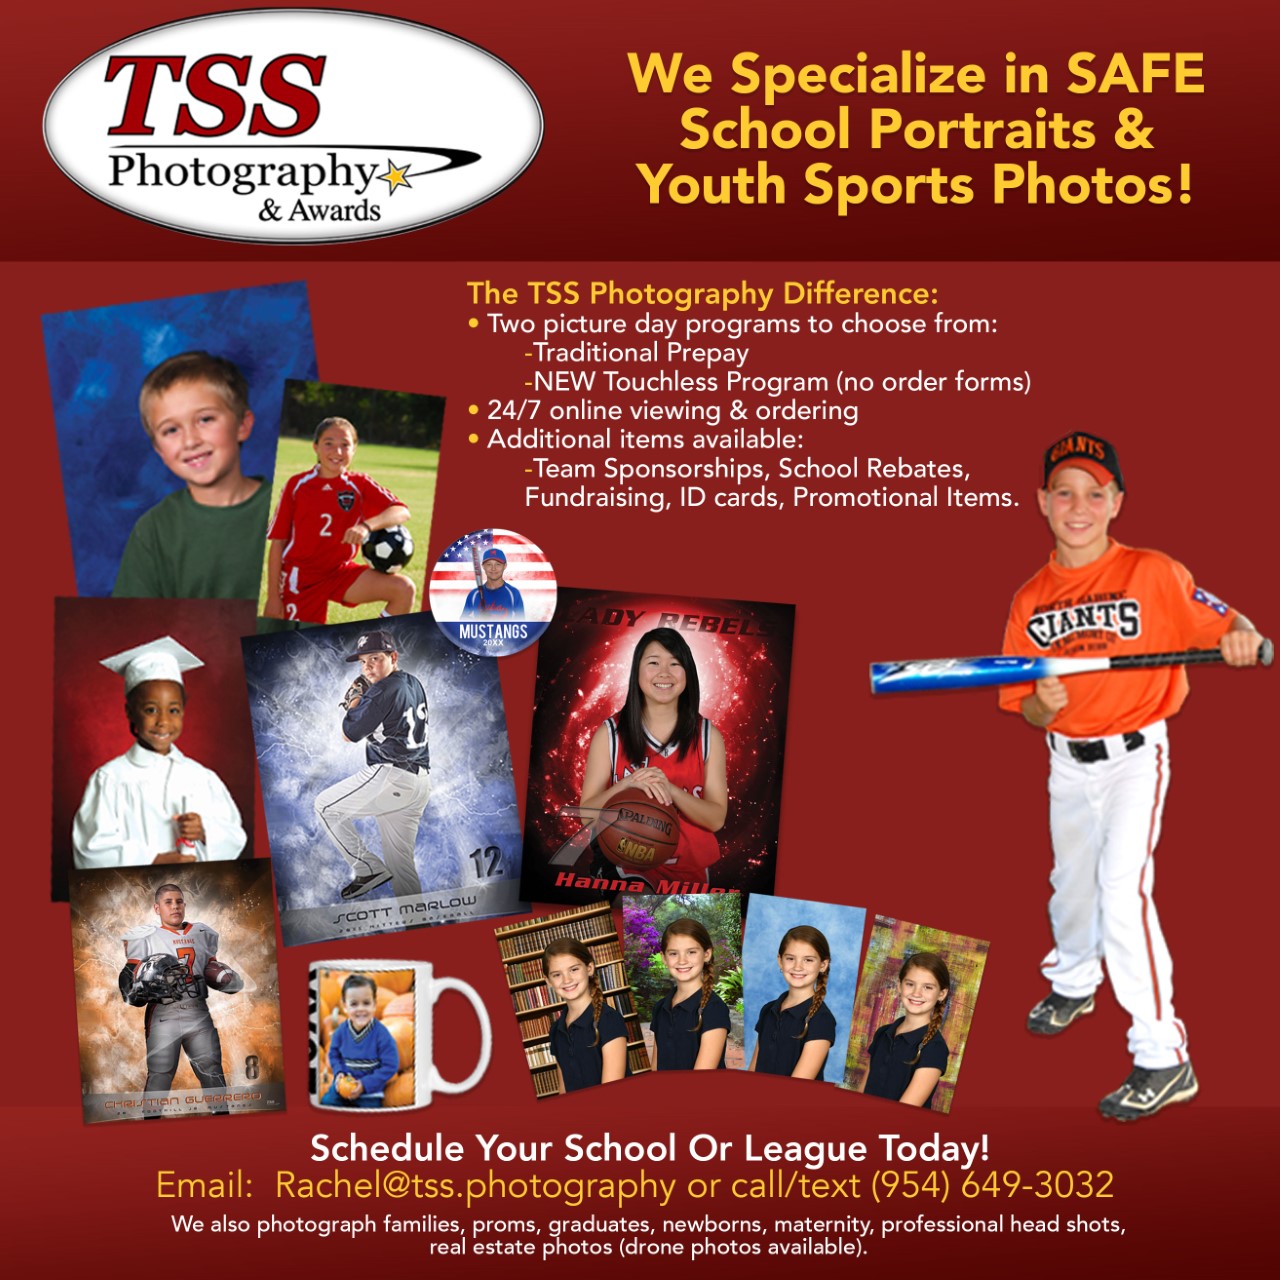 TSS Photography & Awards Photo